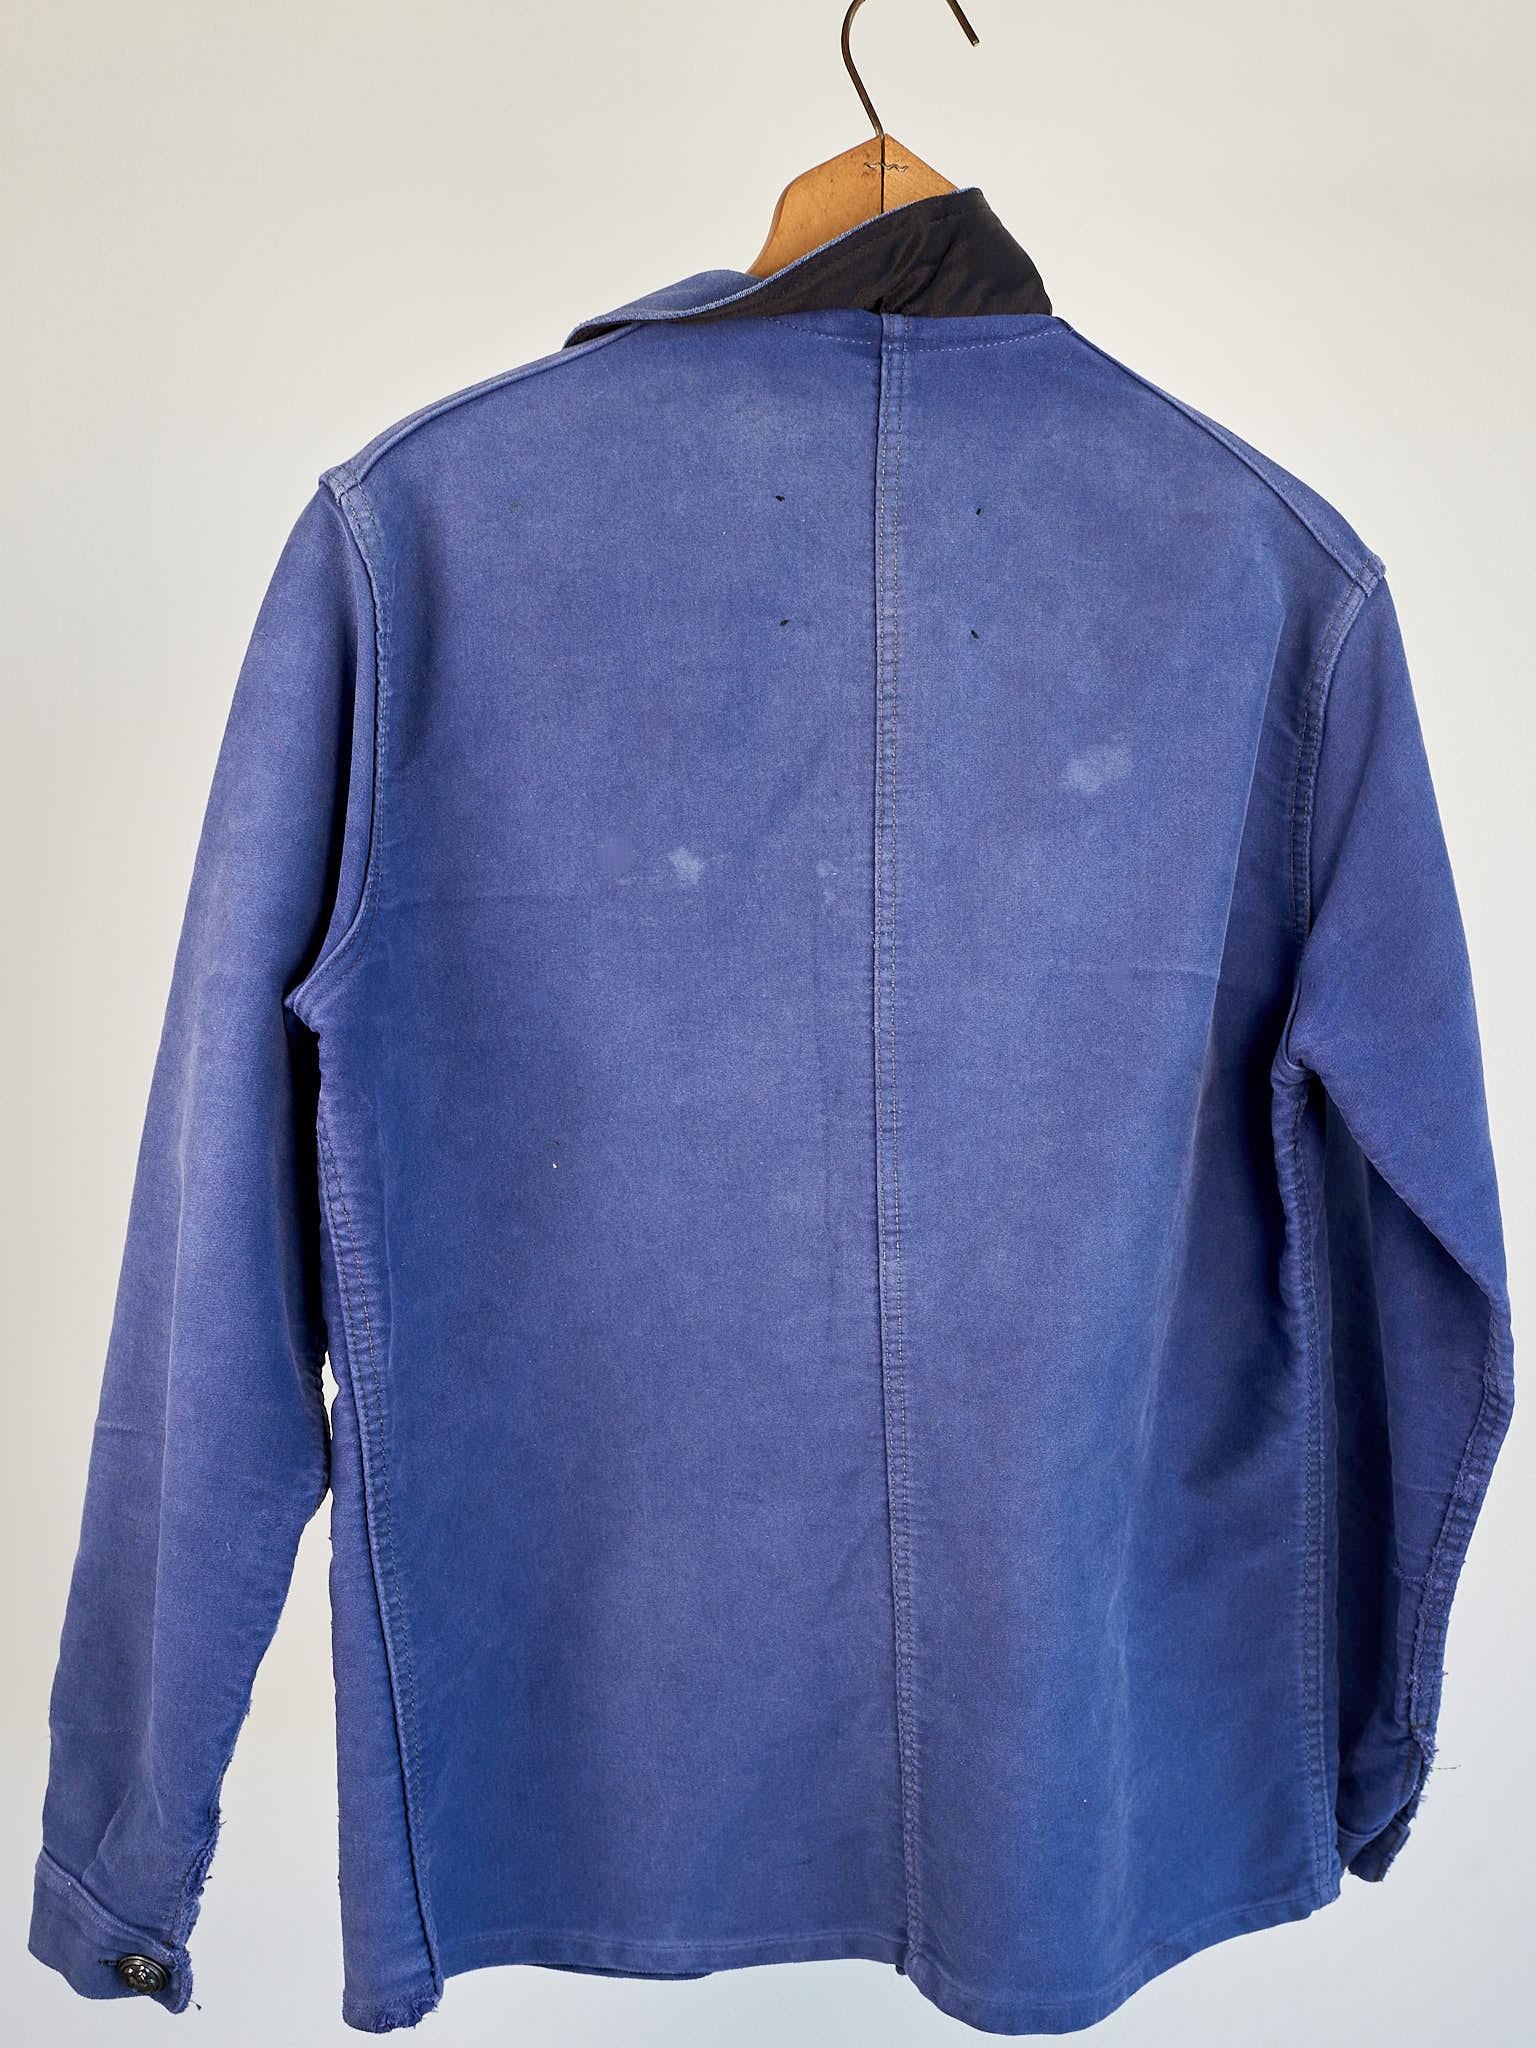 Repurposed Vintage Jacket Embellished French Work Blue Tweed J Dauphin Medium 4